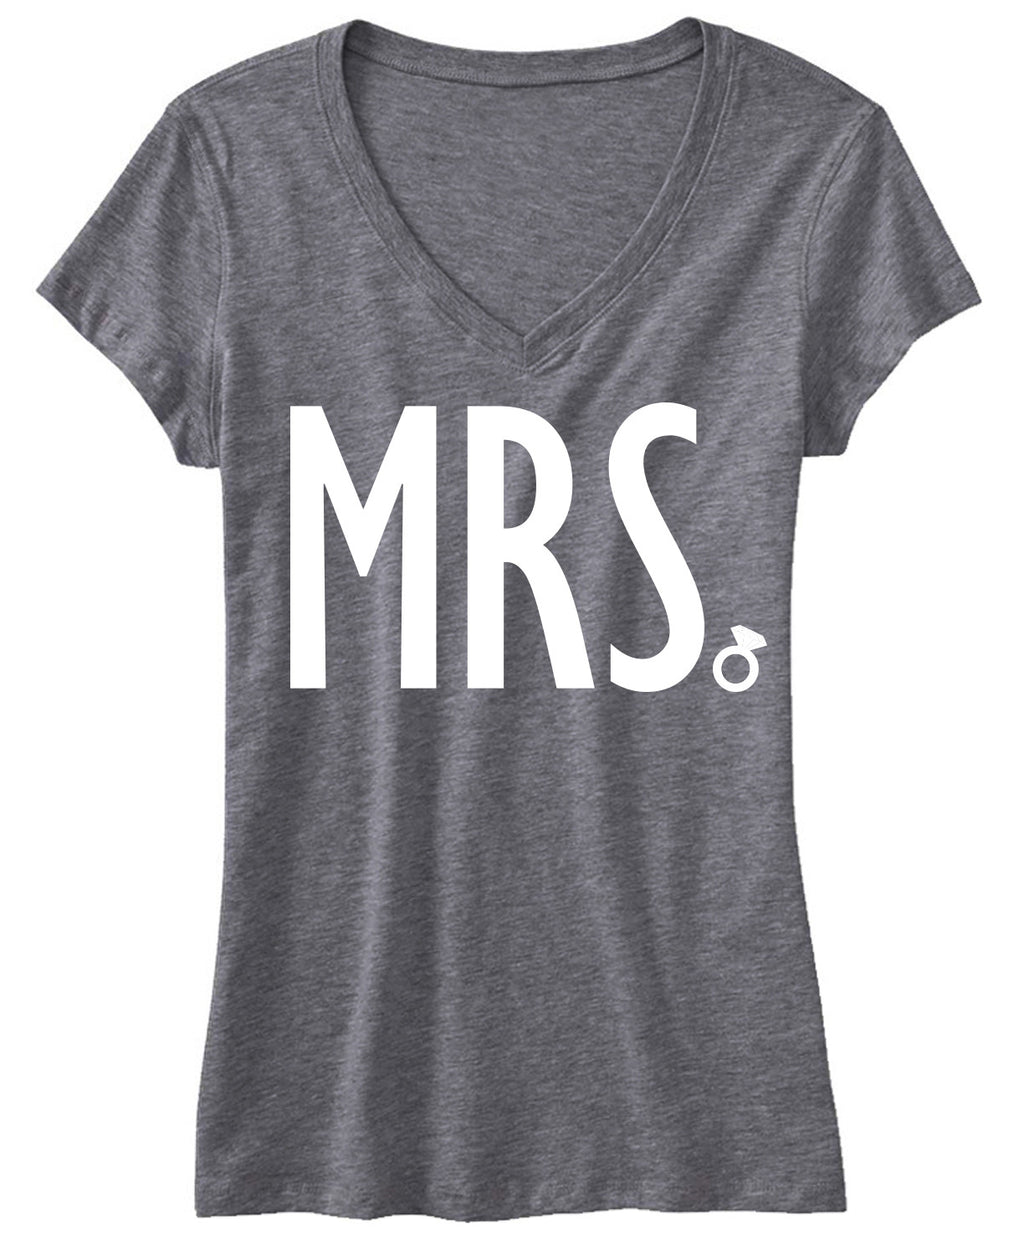 MRS Bride Shirt White Print, Gray V-neck